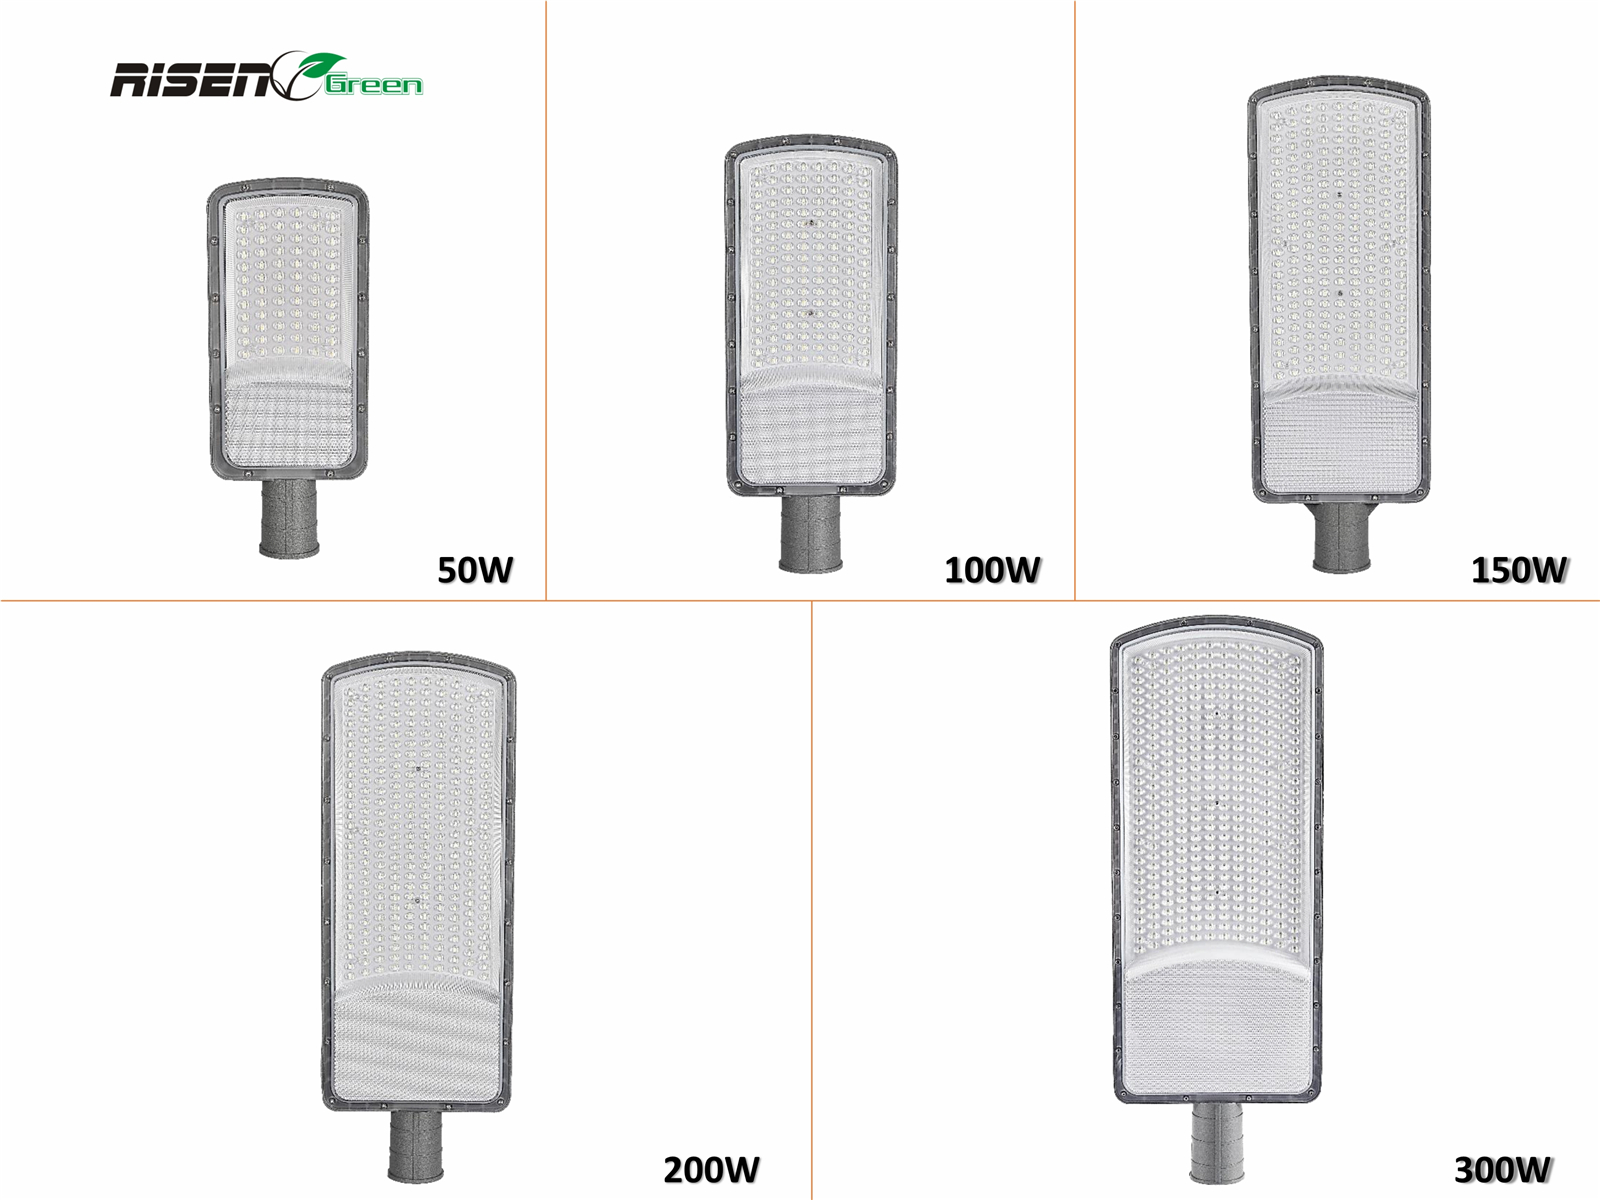 High power Commercia Outdoor IP66 Waterproof Led Street light die cast aluminum 50w 100w 150w 200w 300w  (26)ytp